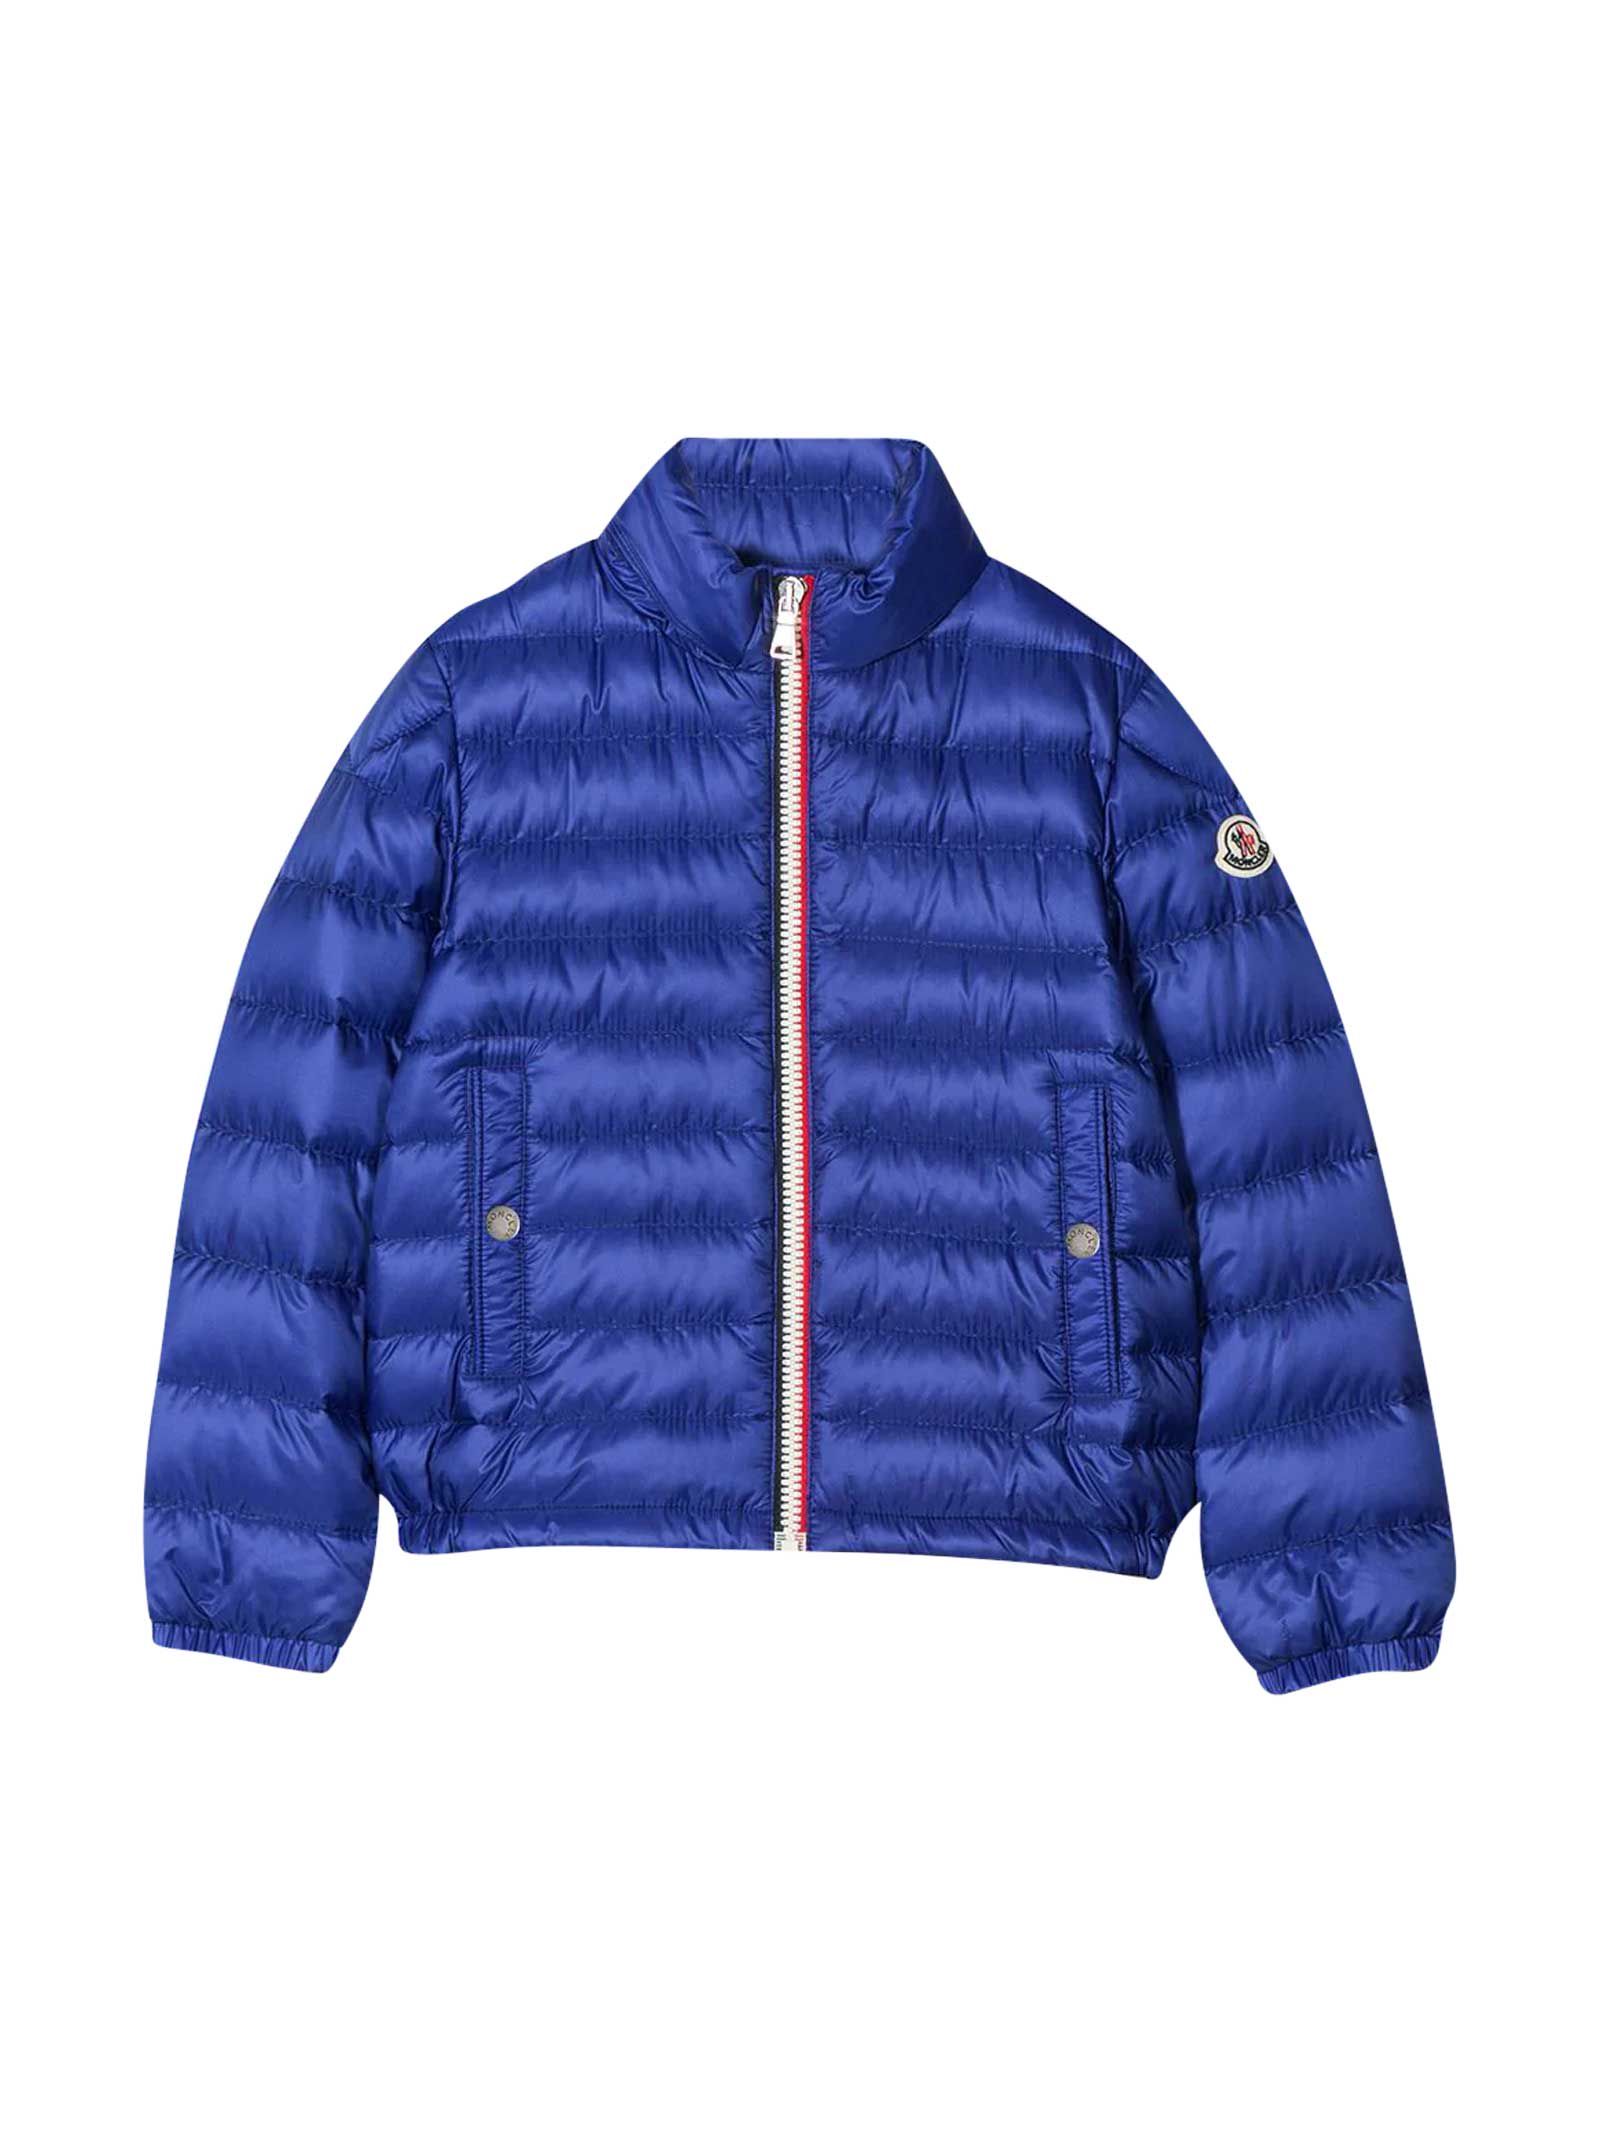 Moncler Kids' Blue Lightweight Jacket